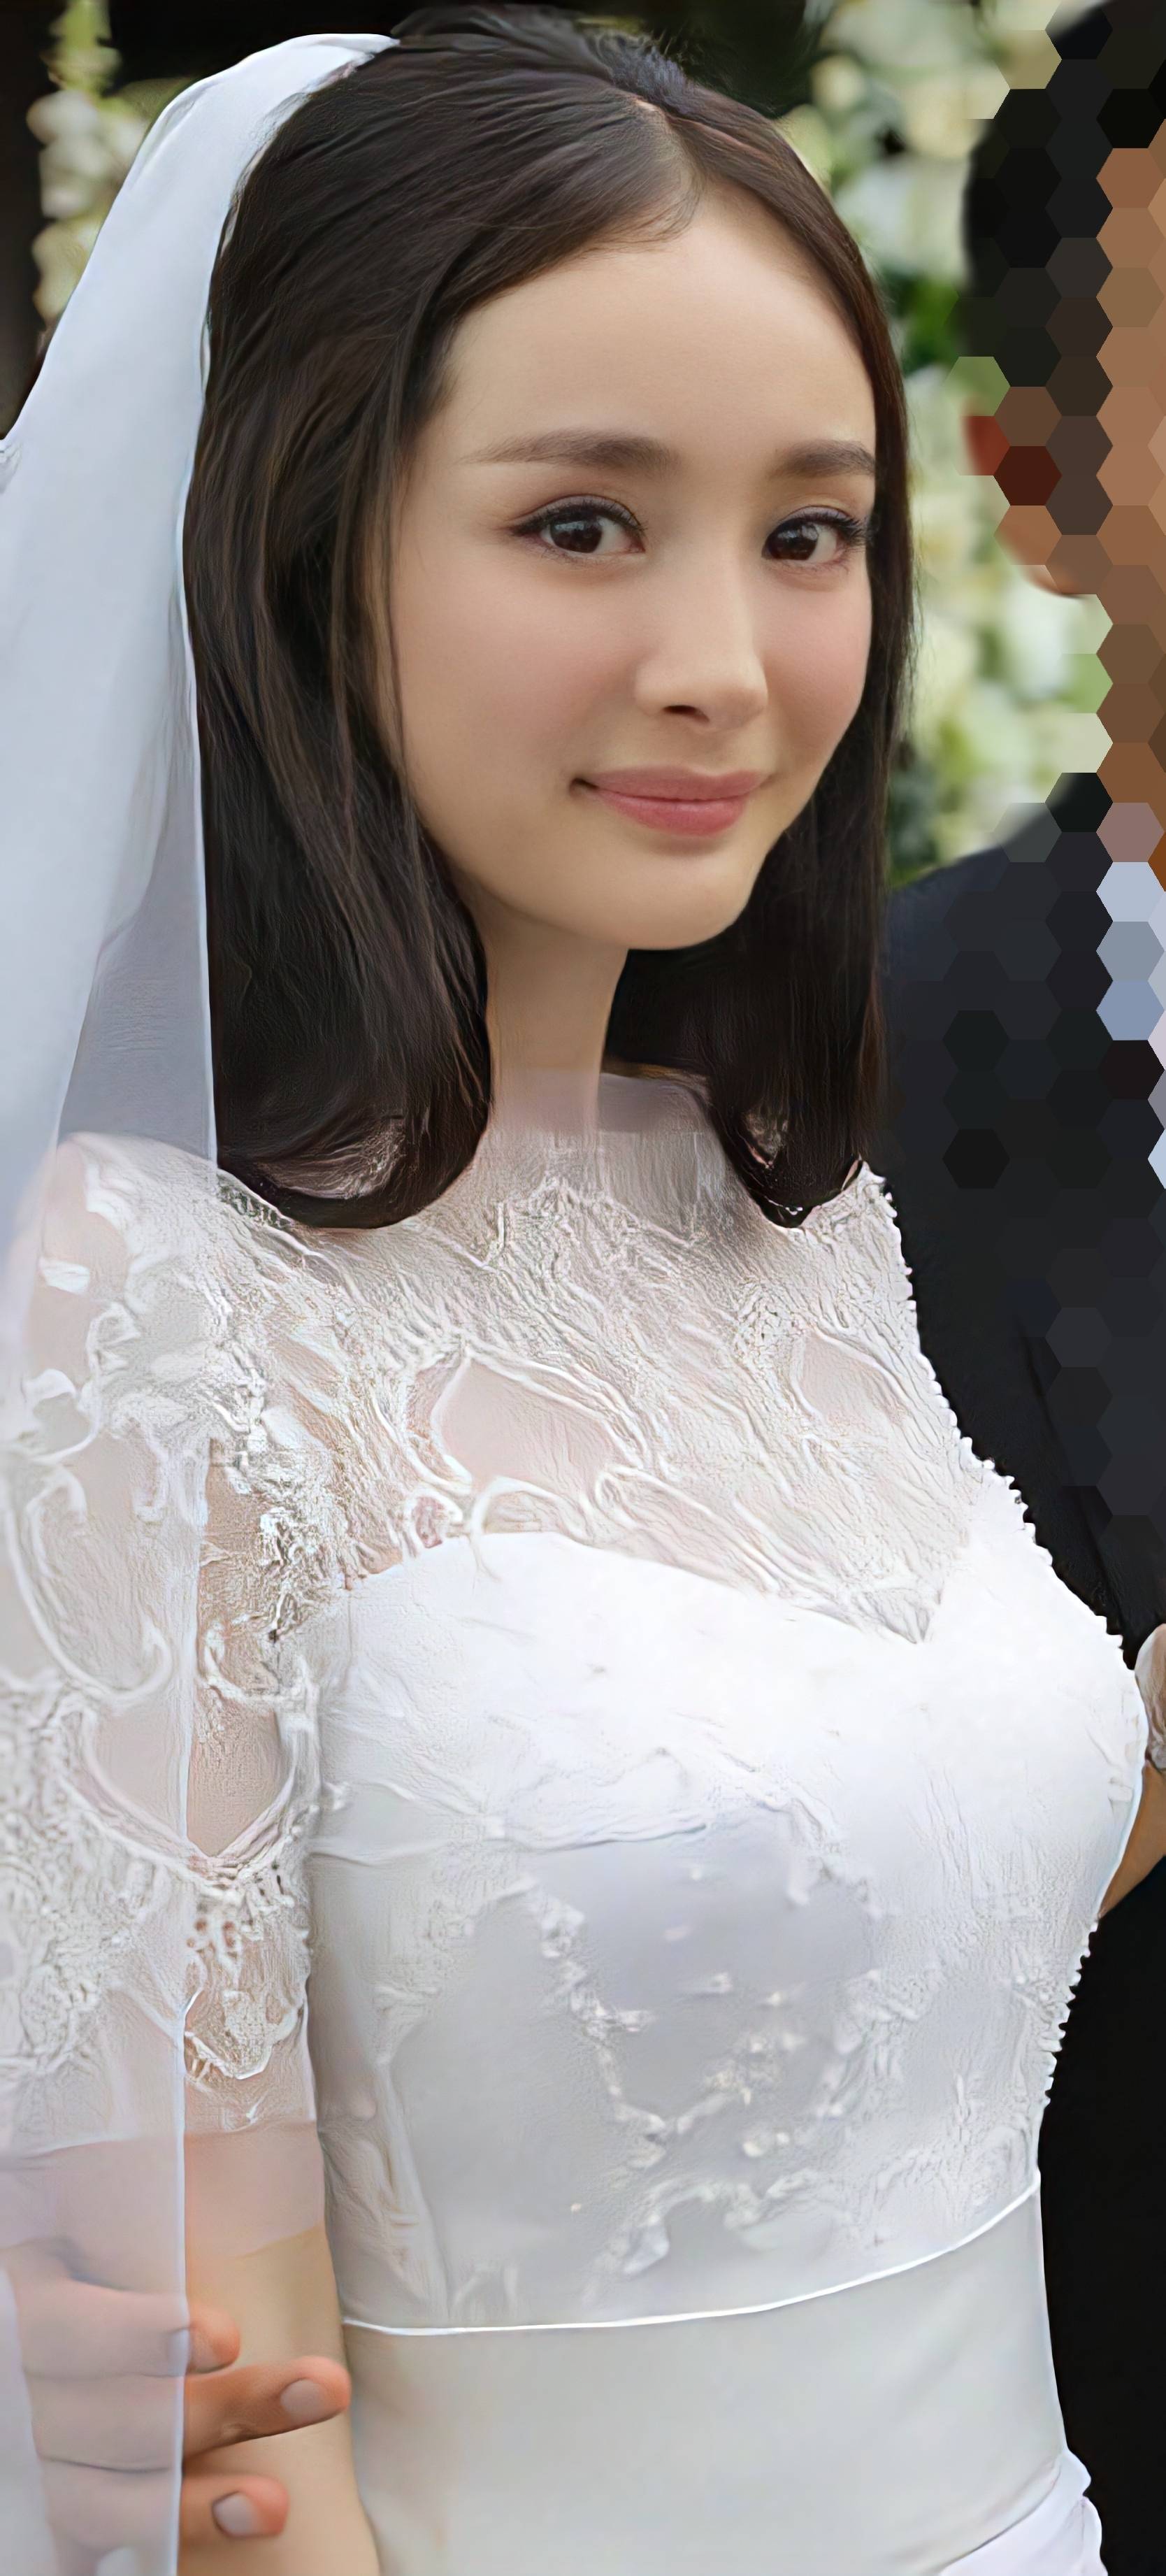 杨幂的高清婚纱照,再看还是会被她的美丽所吸引